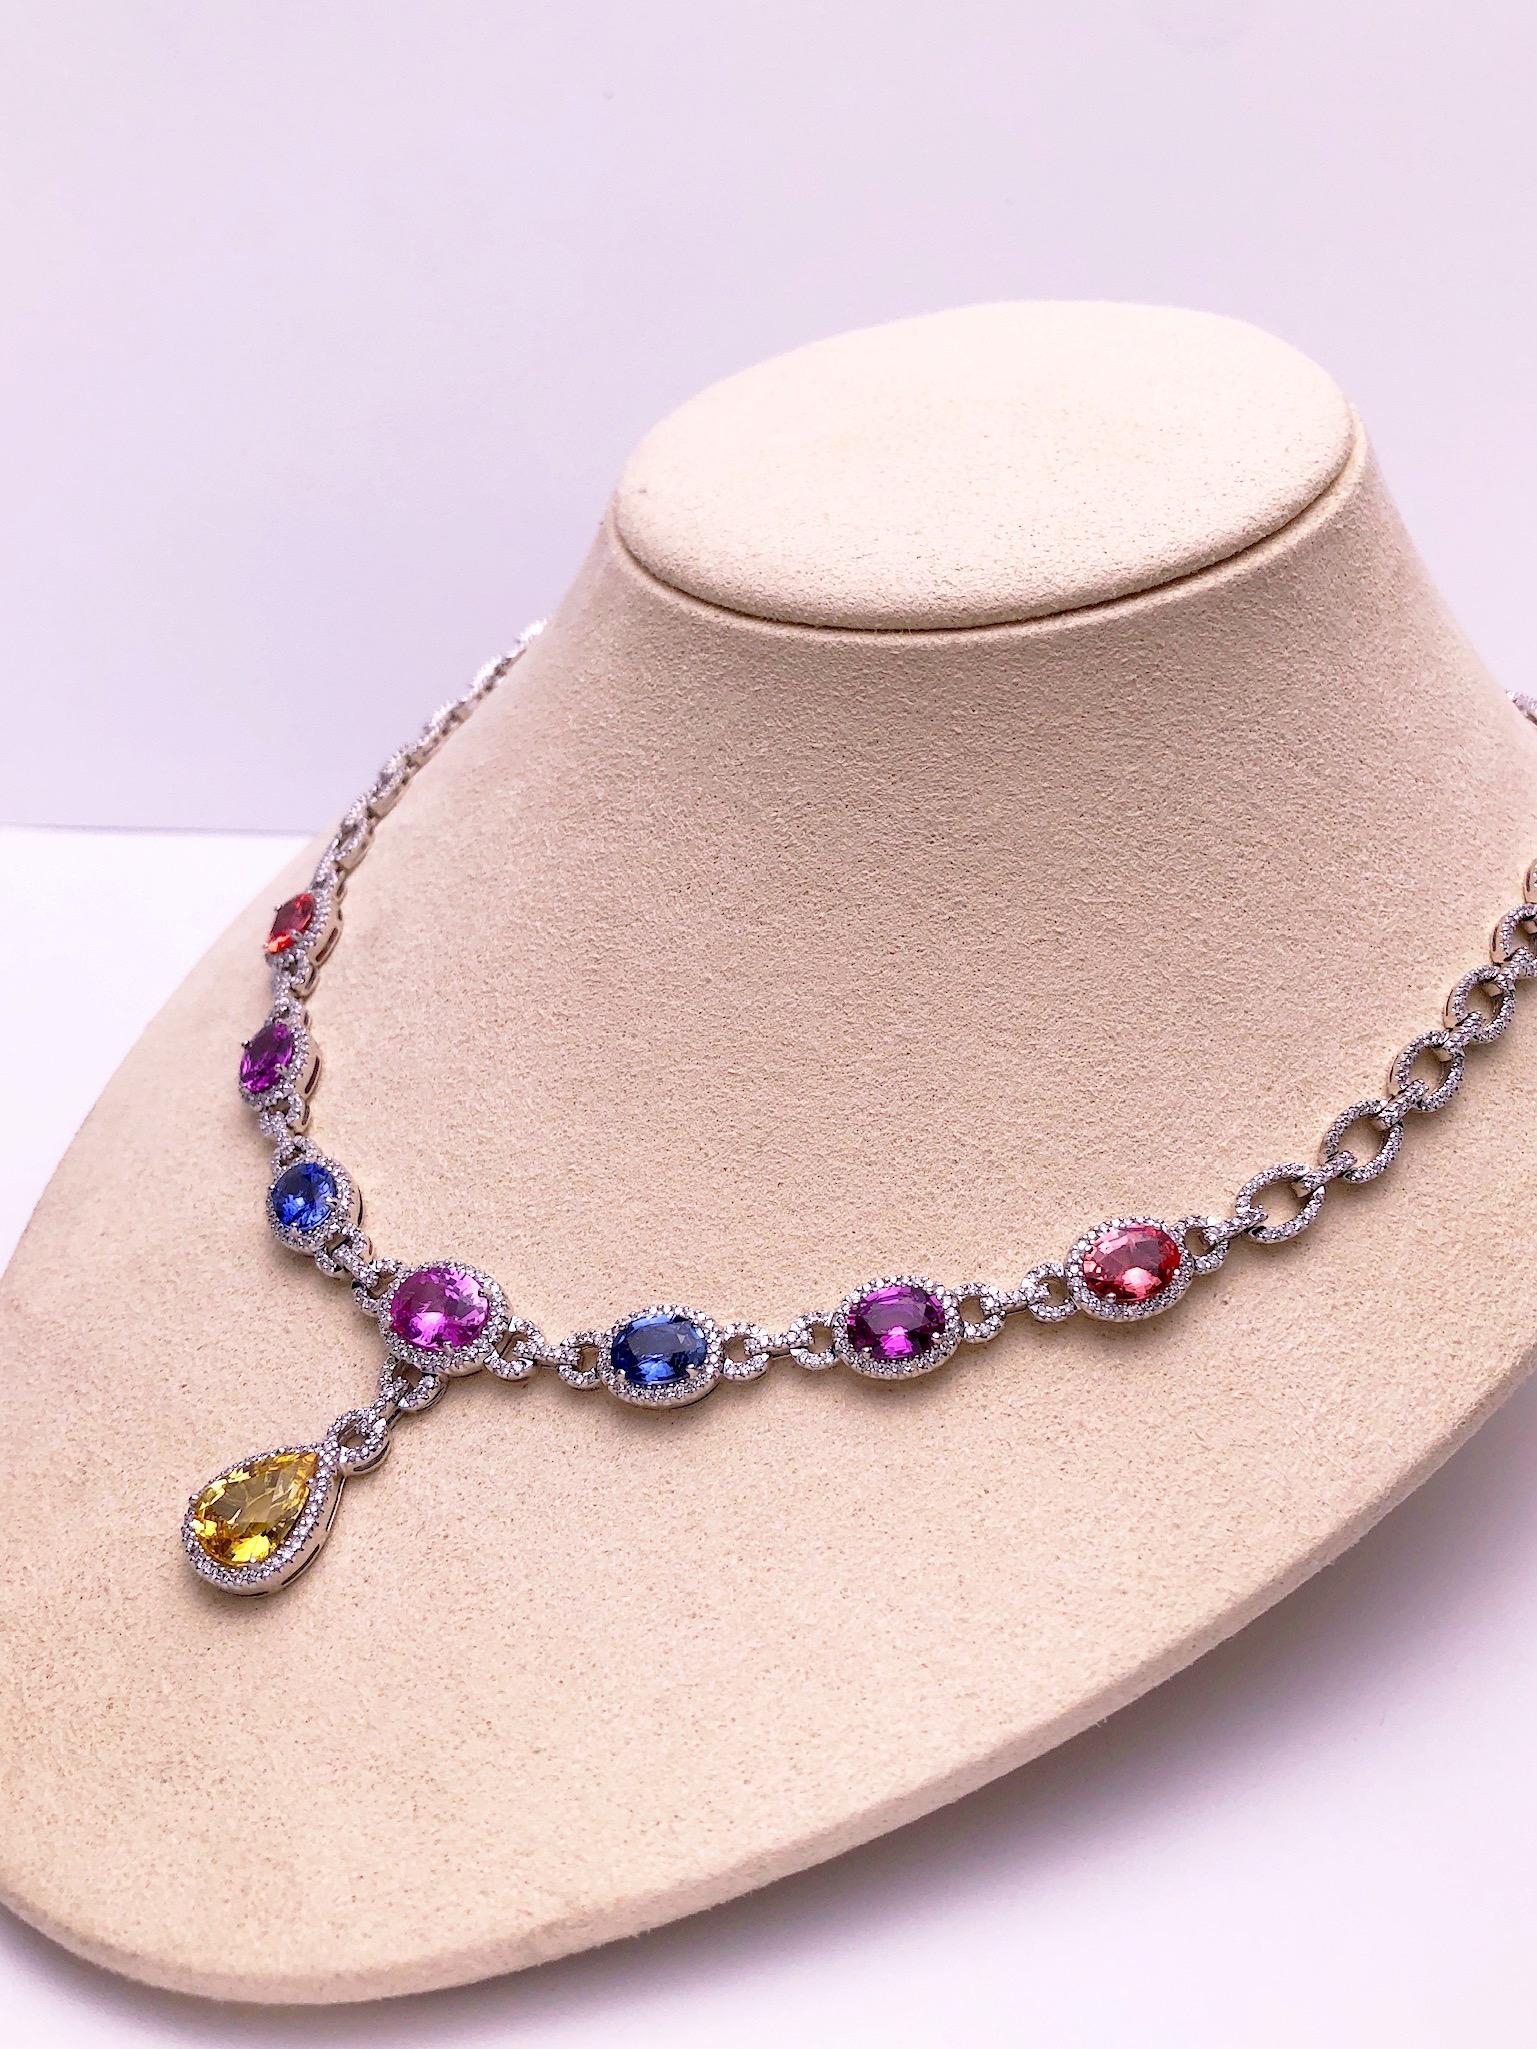 Cellini 18 Karat Gold Diamond & 13.38 Carat Multicolored Sapphire Drop Necklace For Sale 4